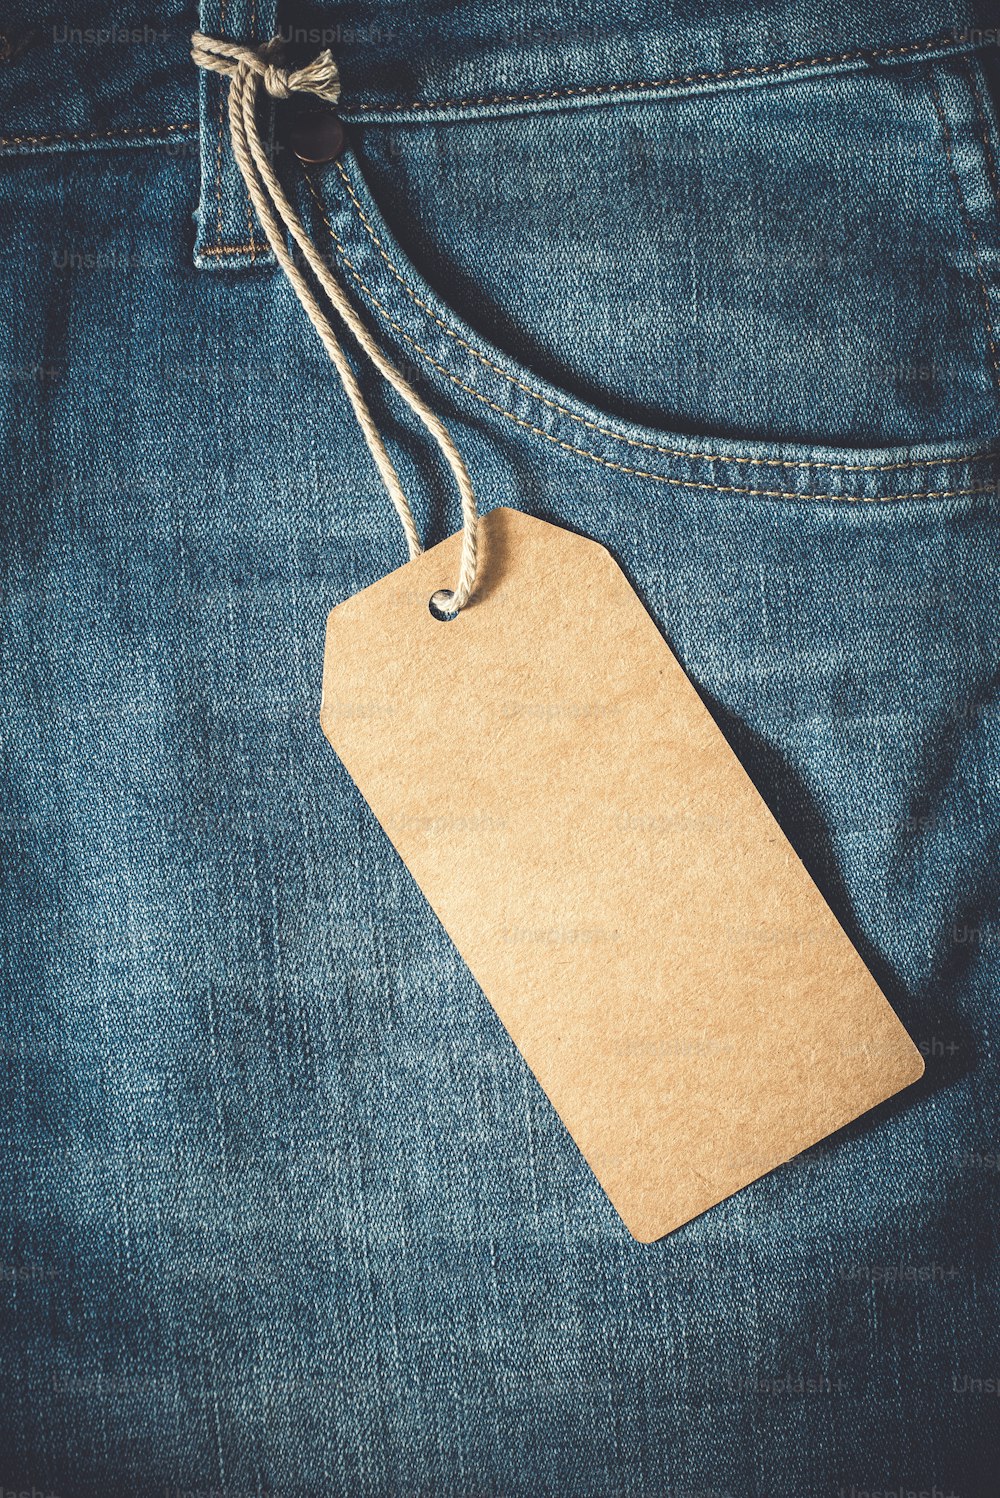 Etichetta di carta marrone vuota di jeans. Stile effetto colore vintage.